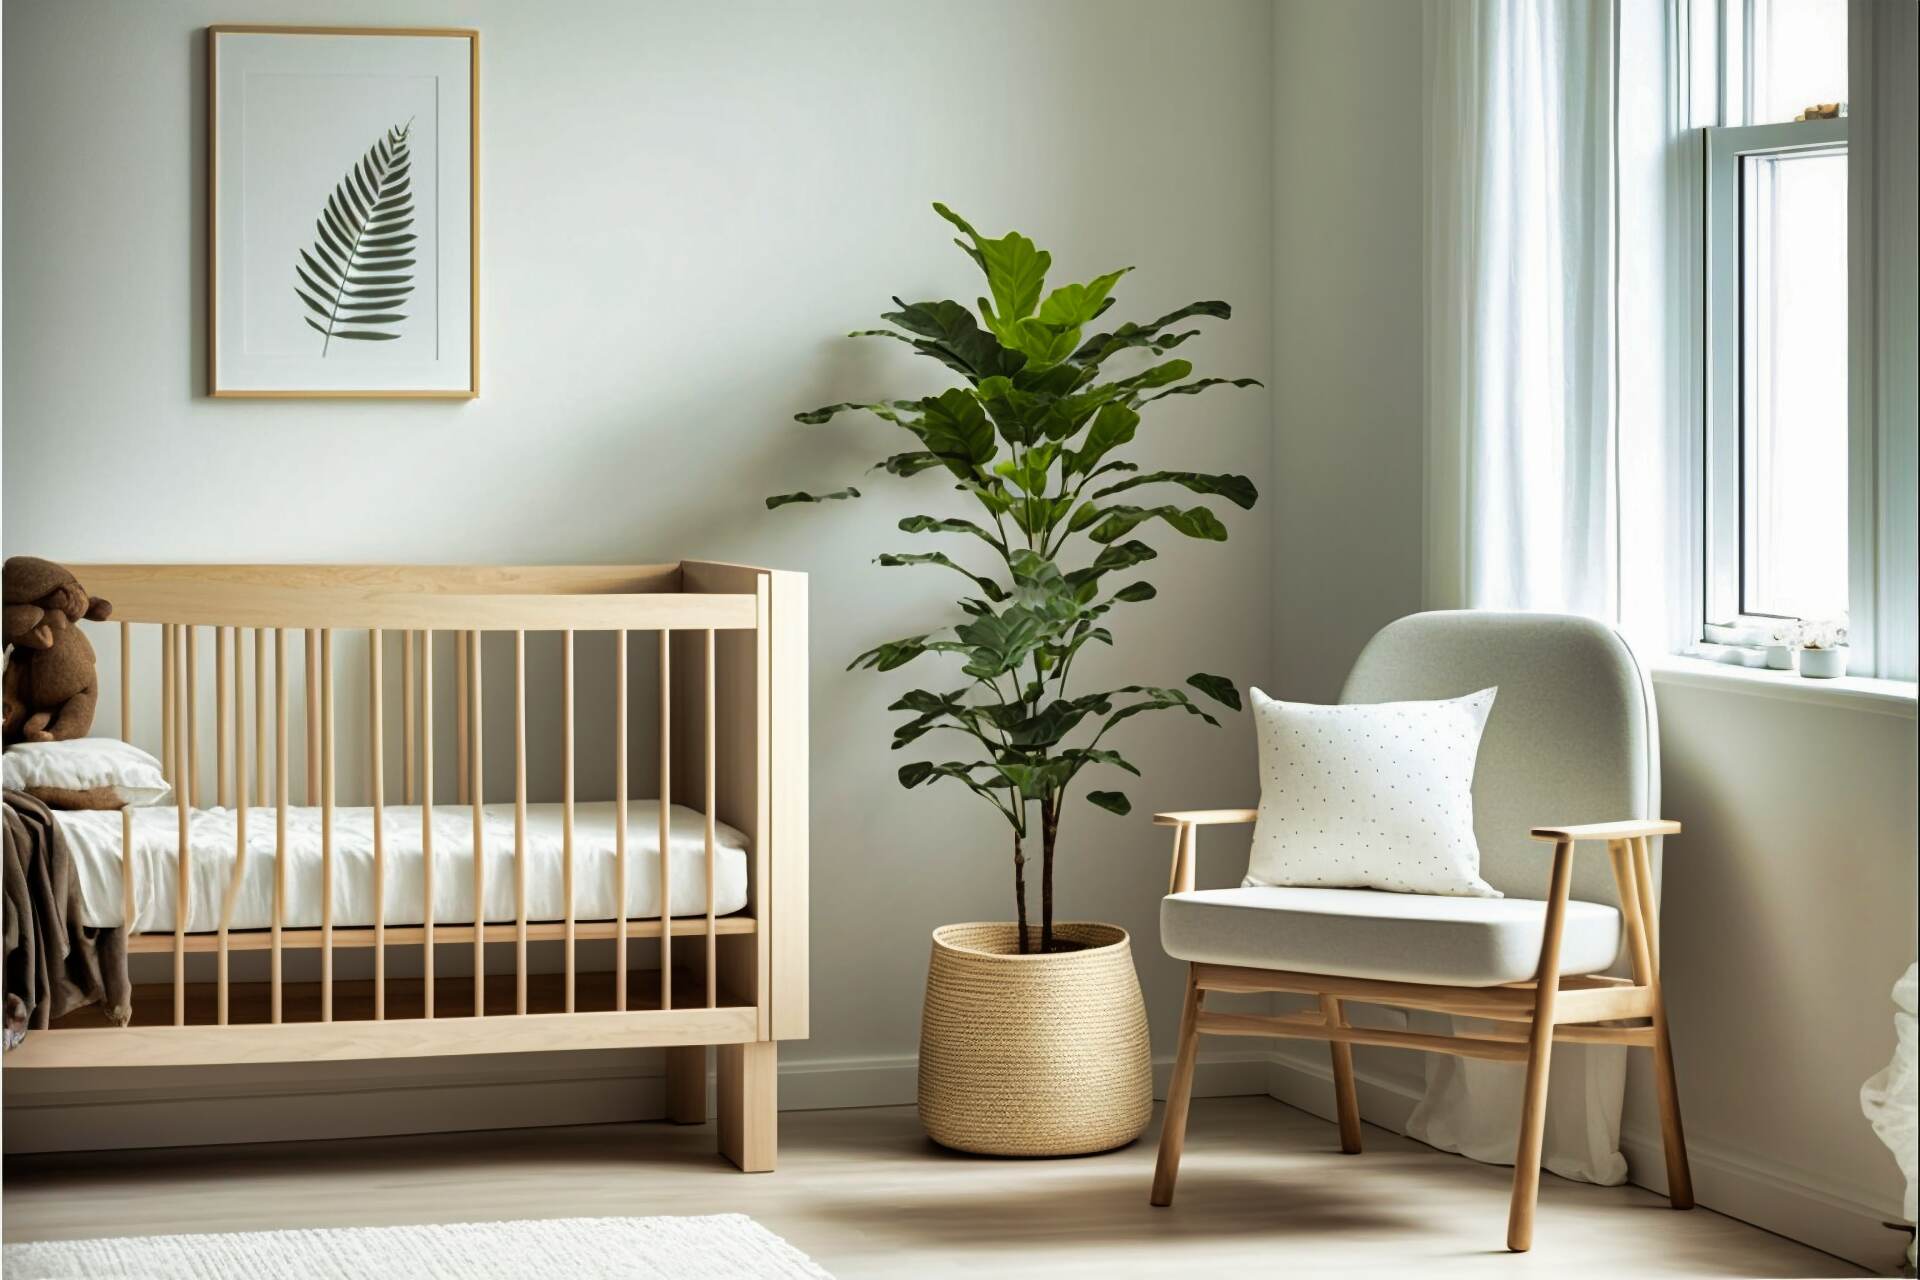 Simple And Sweet A Minimalist Nursery Room Design